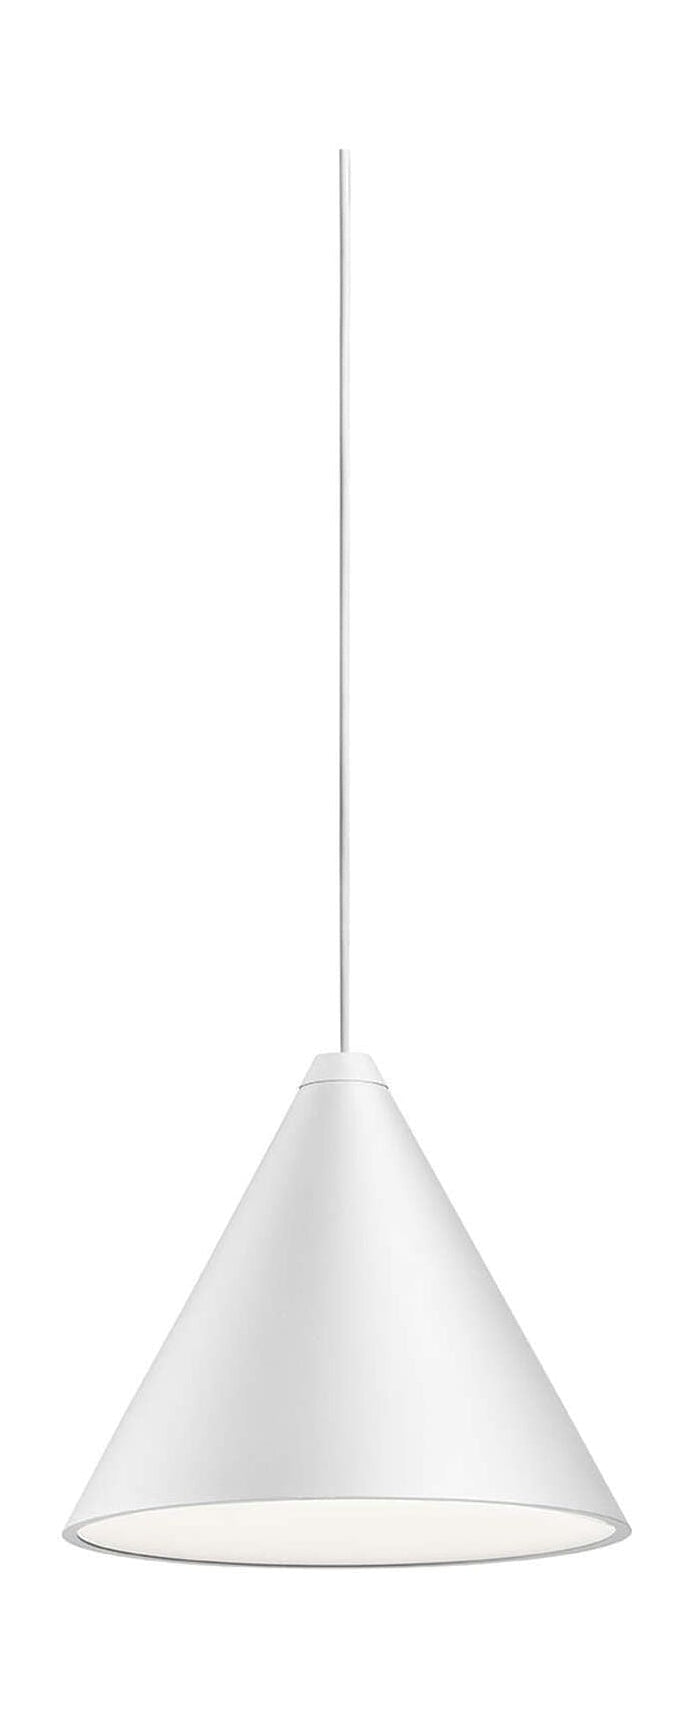 Flos String Light Cone Pendant med spjäll 22 m, vit